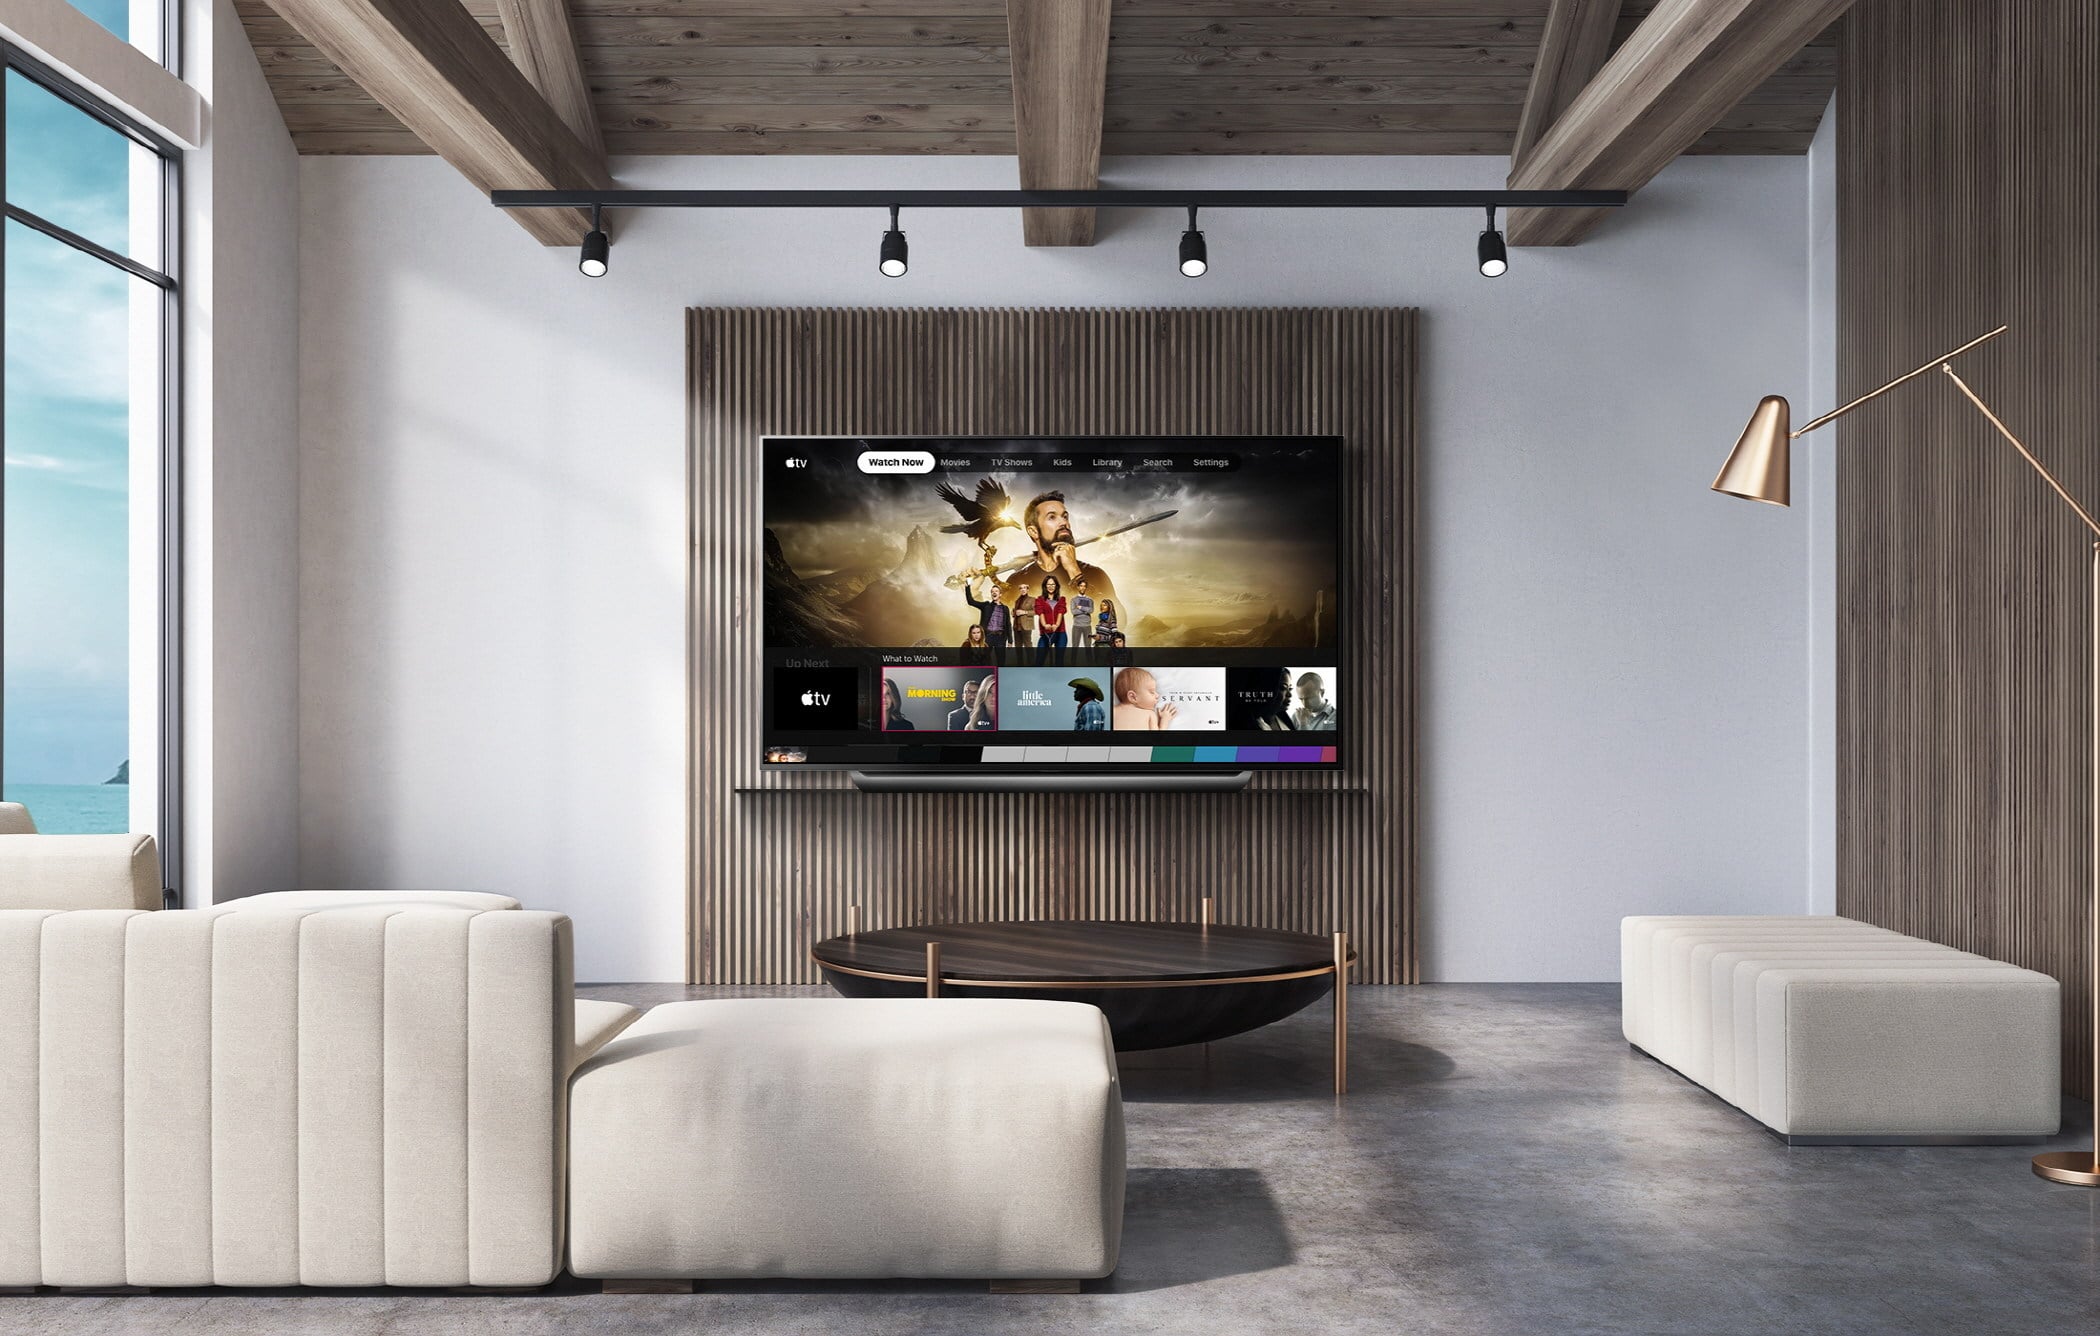 TV da LG com o app Apple TV